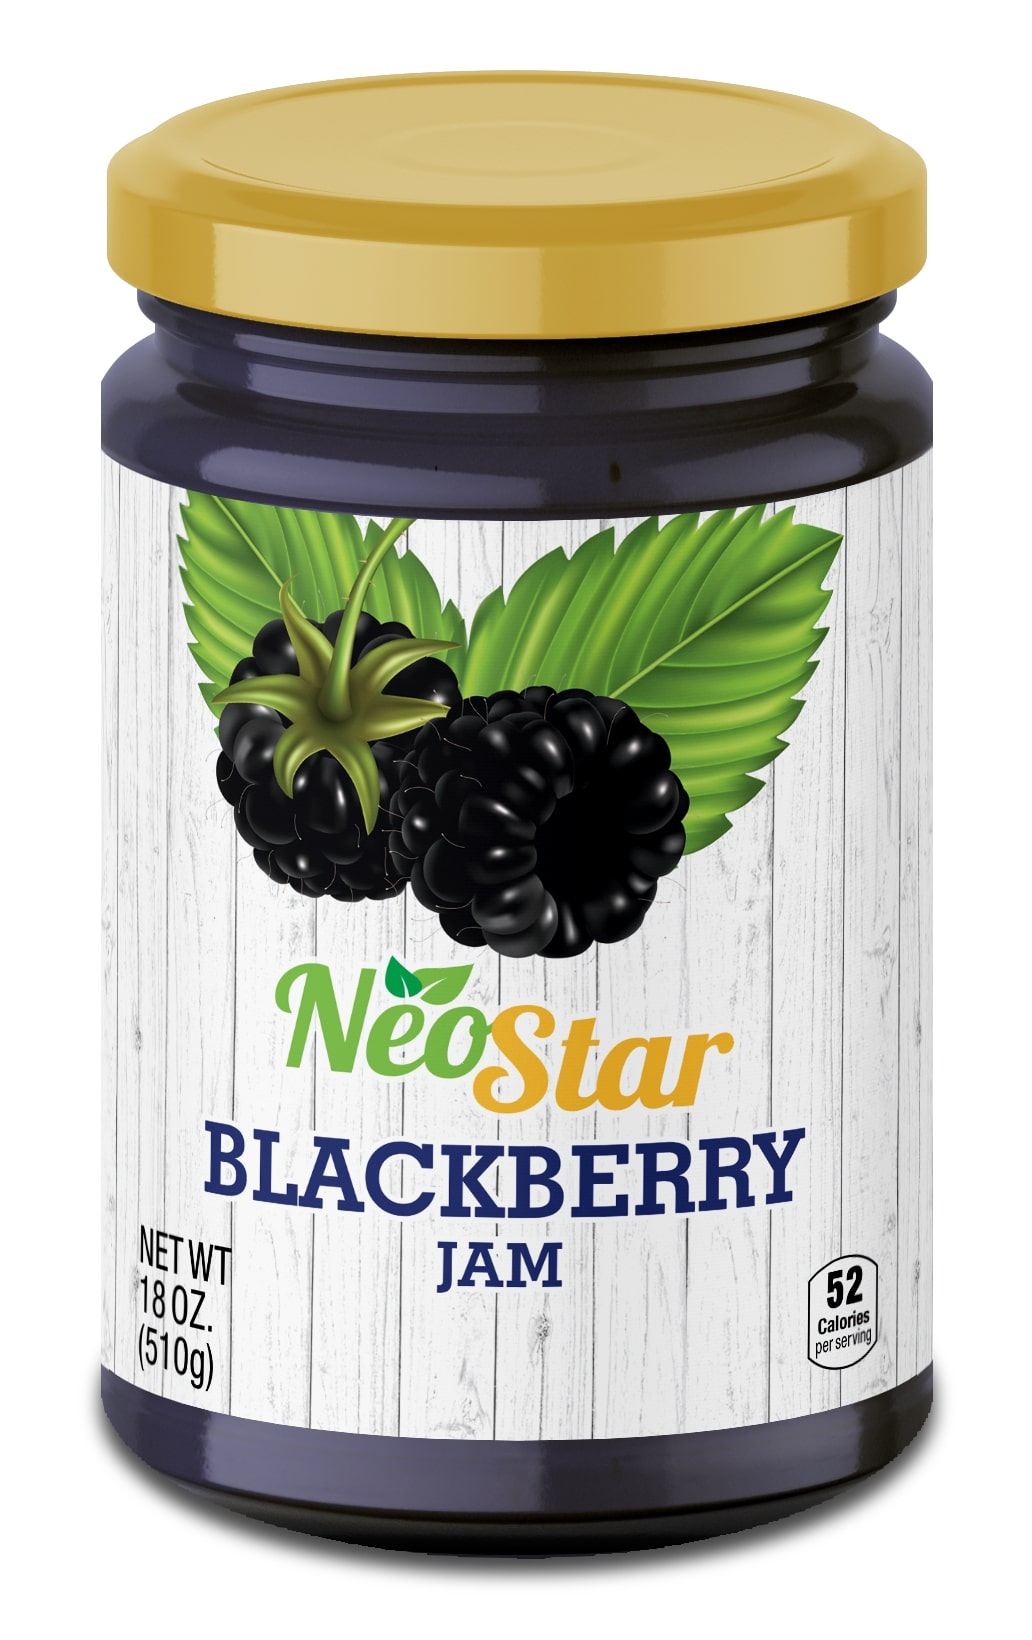 18oz Blackberry Jam